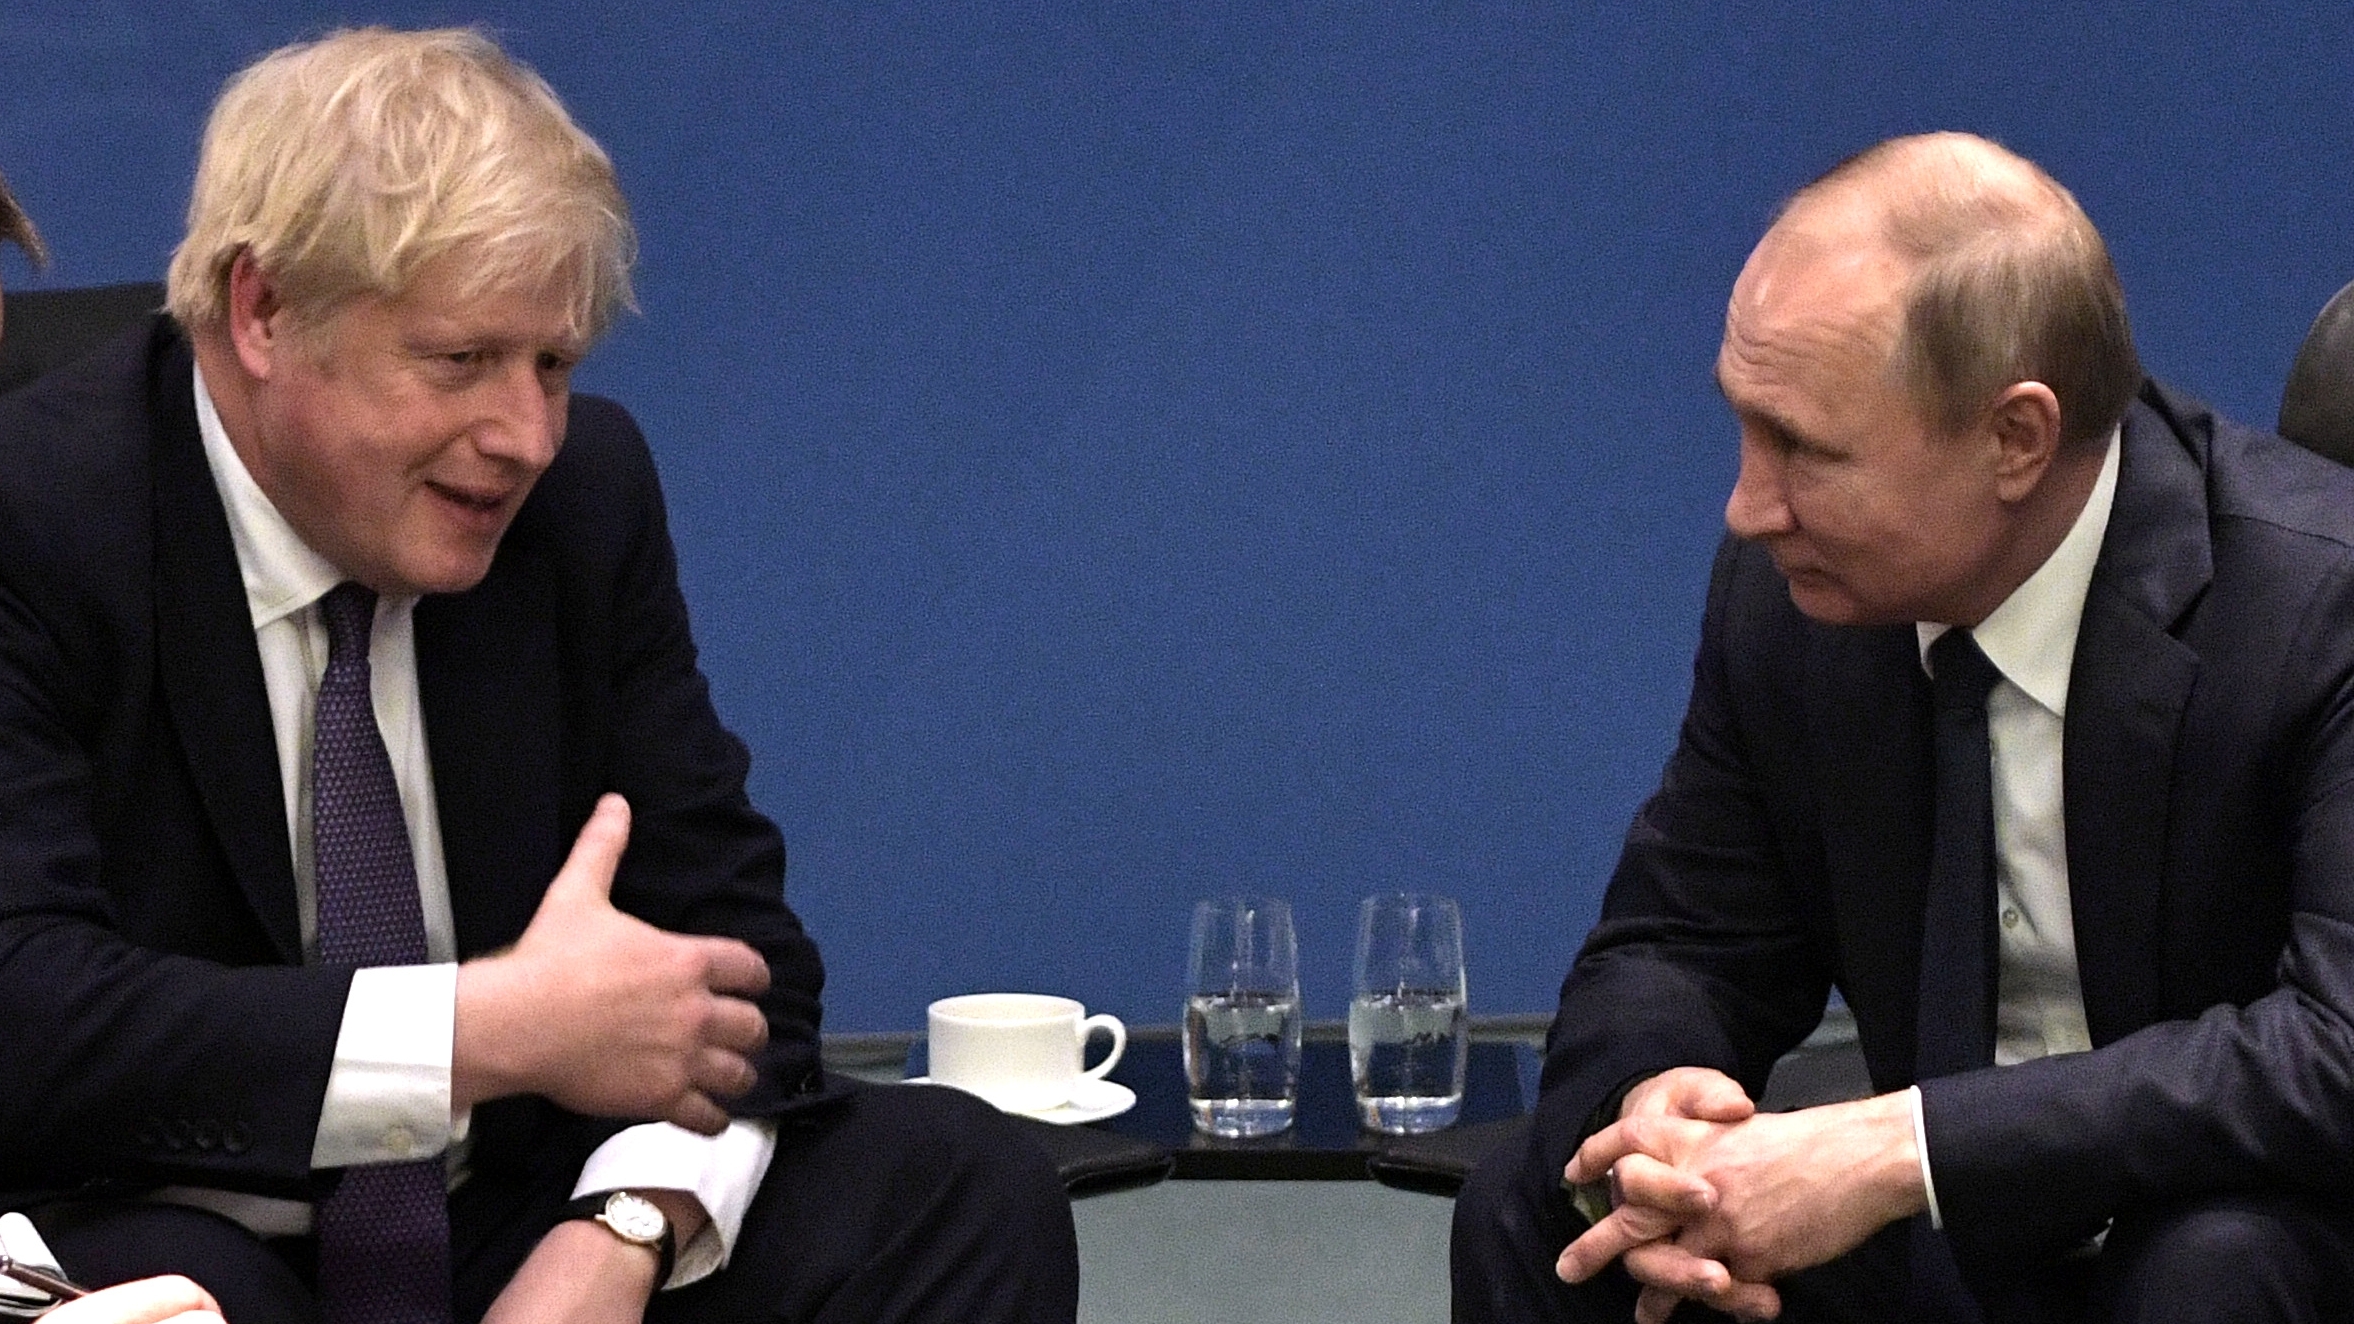 FOTO DE ARCHIVO: El presidente de Rusia, Vladímir Putin, y el primer ministro británico, Boris Johnson, se reúnen al margen de la cumbre sobre Libia en Berlín, Alemania, el 19 de enero de 2020. Sputnik/Aleksey Nikolskyi/Kremlin vía REUTERS